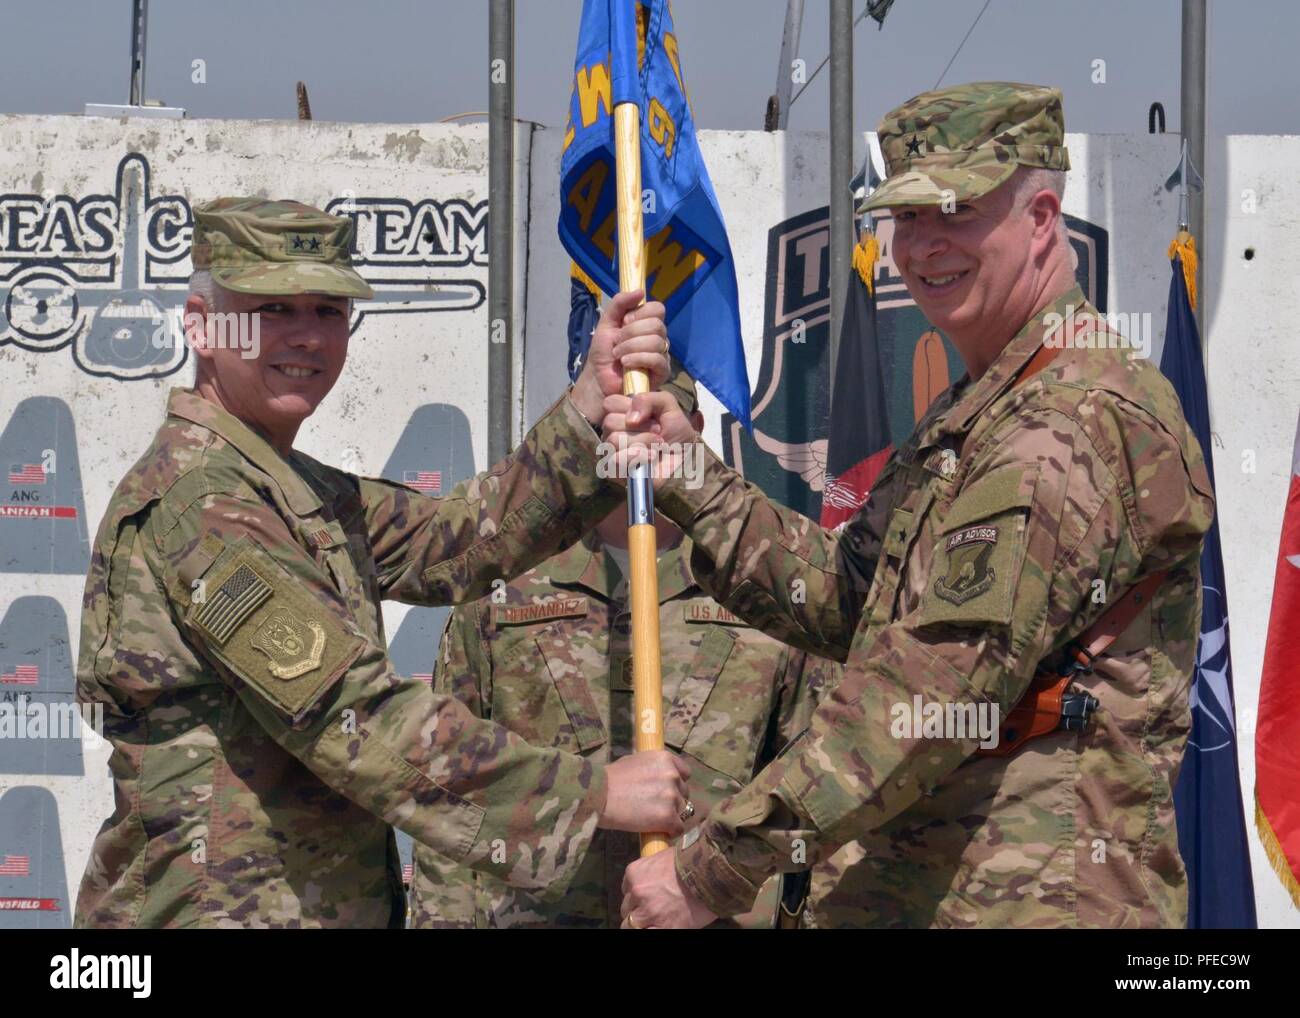 KABUL, Afganistán (4 de junio del 2016) - La Fuerza Aérea de los EE.UU Brig. Gen. Joel Carey, capacitar, asesorar y ayudar Command-Air y 438th Air Expeditionary Wing commander, asume el mando de la Fuerza Aérea de los EE.UU. My Gen. Barre Seguin, el Comando Aéreo de la OTAN de Afganistán y 9ª tarea expedicionaria aérea y espacial Force-Afghanistan comandante, el 4 de junio de 2018, en Kabul, Afganistán. Aire TAAC aprovecha el tren, asesorar y asistir a las actividades de concierto con fuertes relaciones personales, para crear profesionales aviadores afganos capaces de planear, dirigir, empleando, decisivo y sostener operaciones airpower. Foto de stock